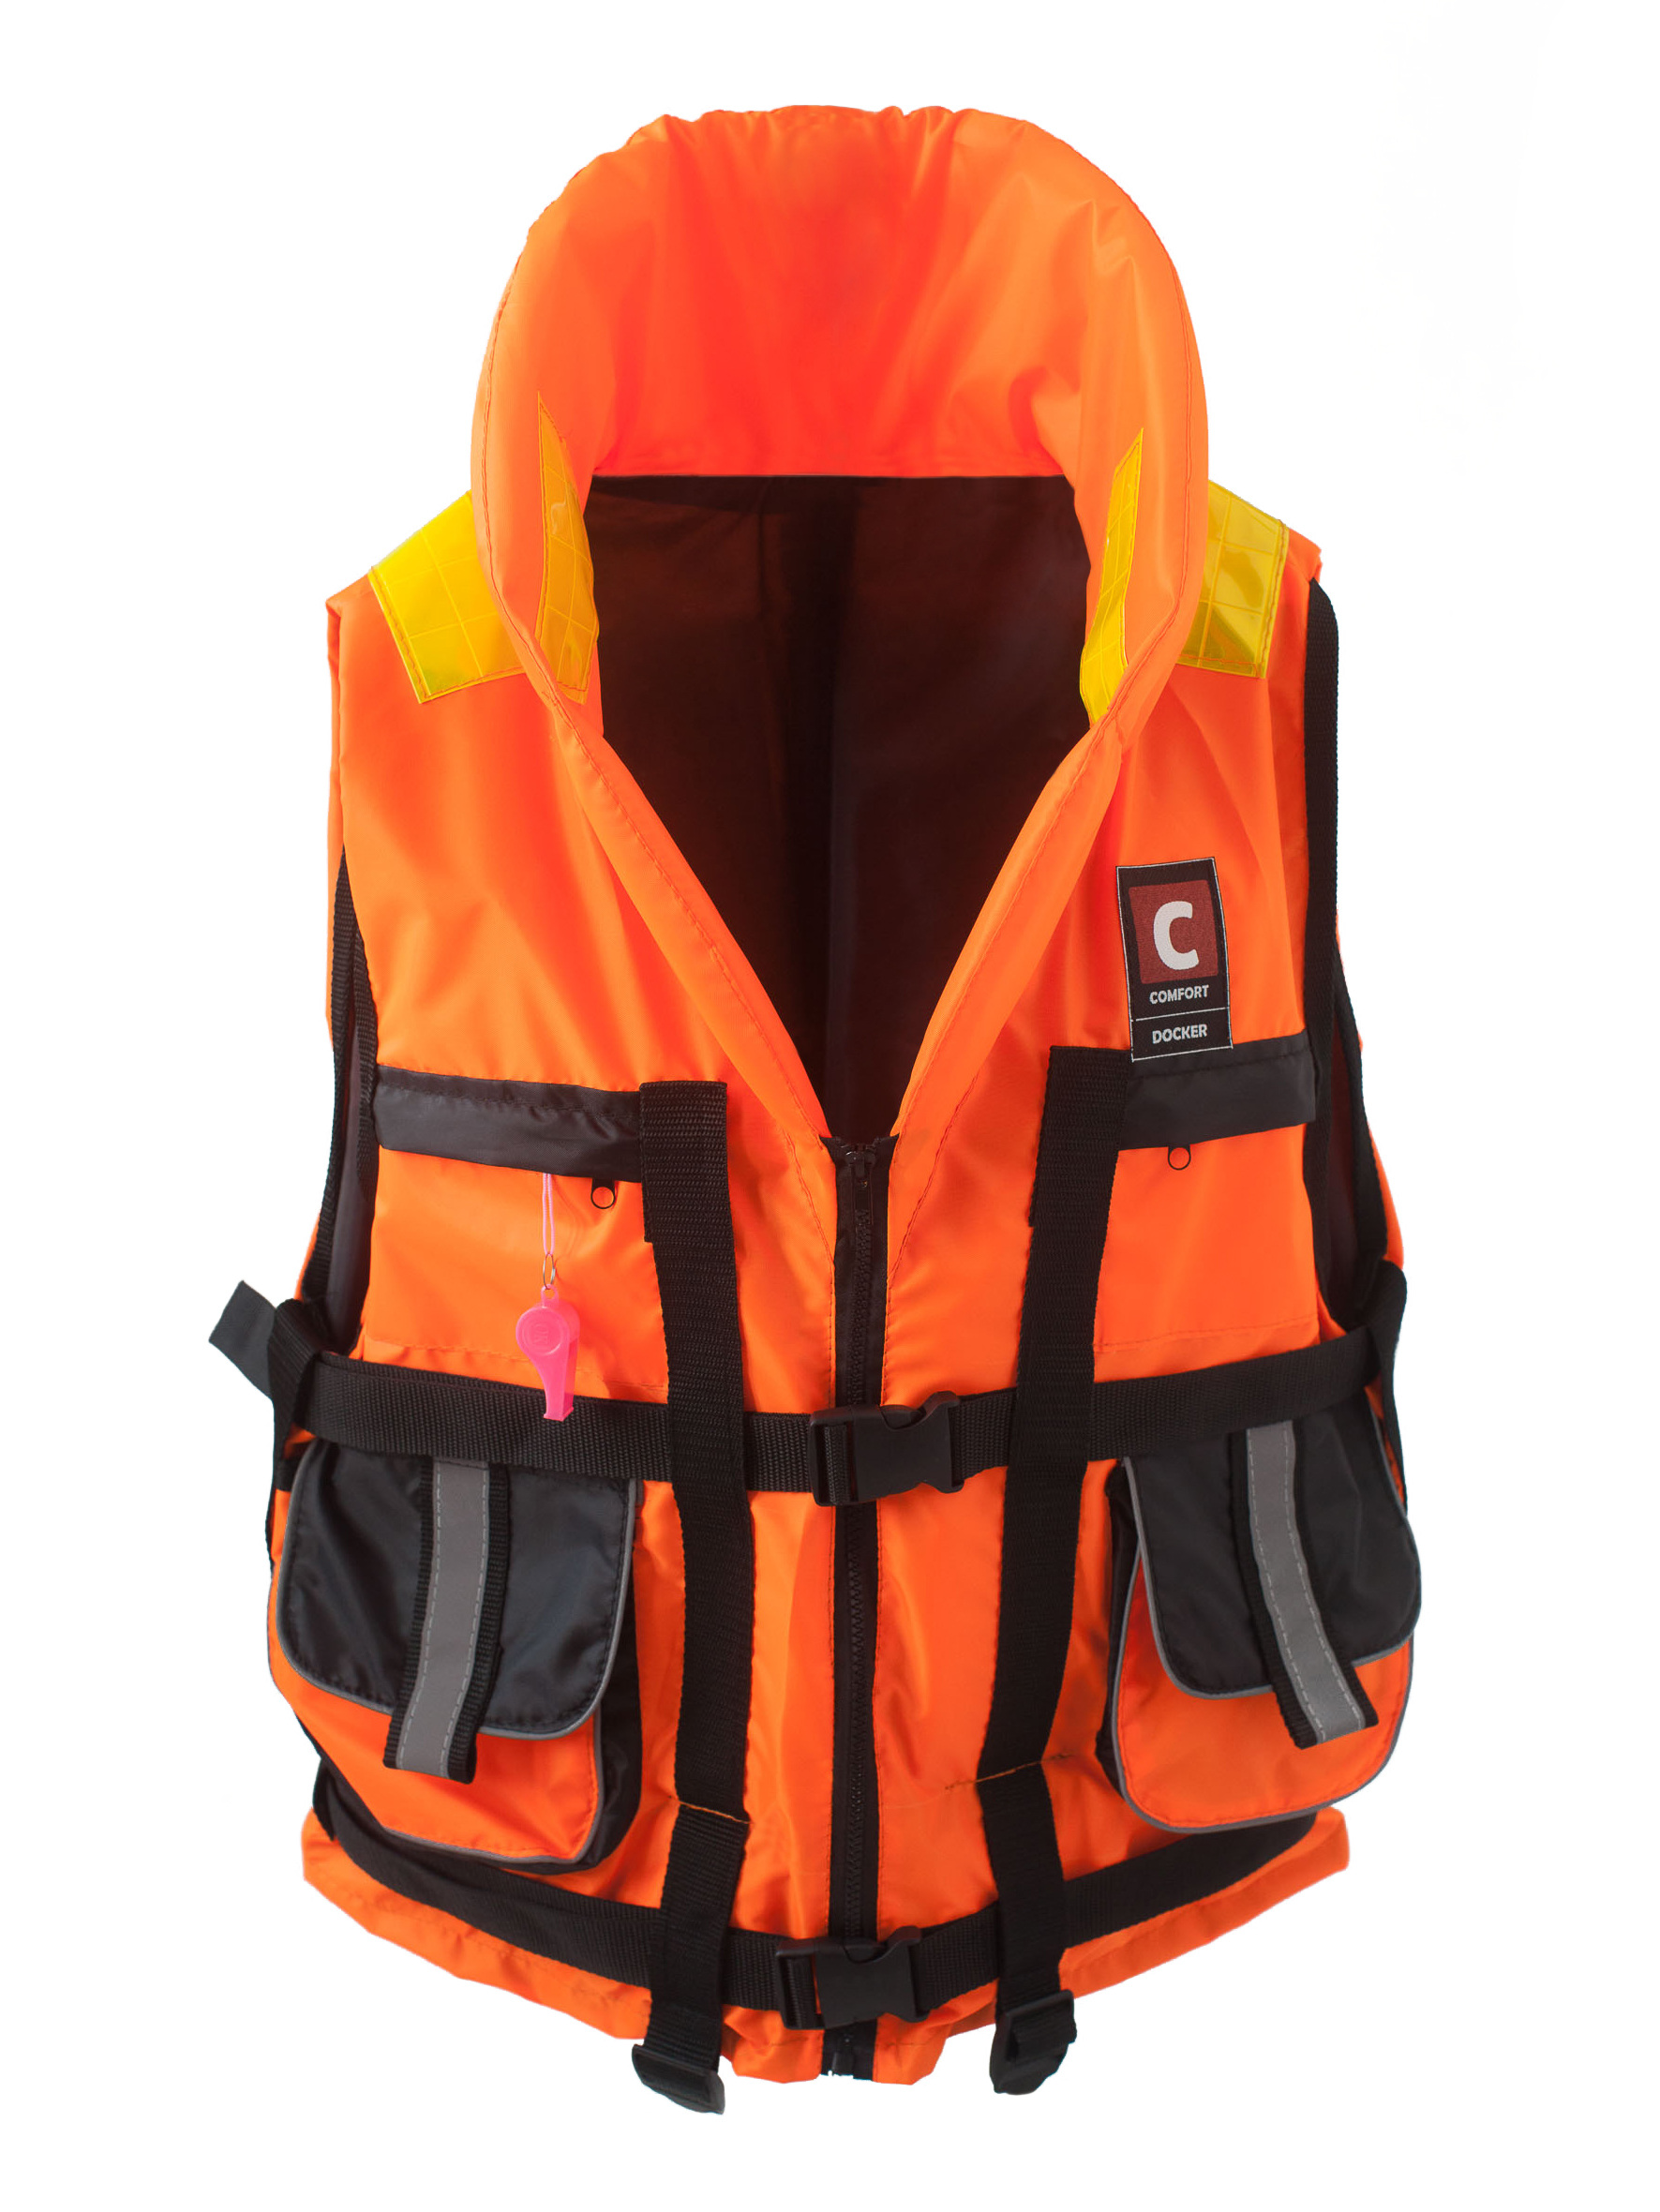 фото Жилет спасательный с накладными карманами comfort docker 60 кг